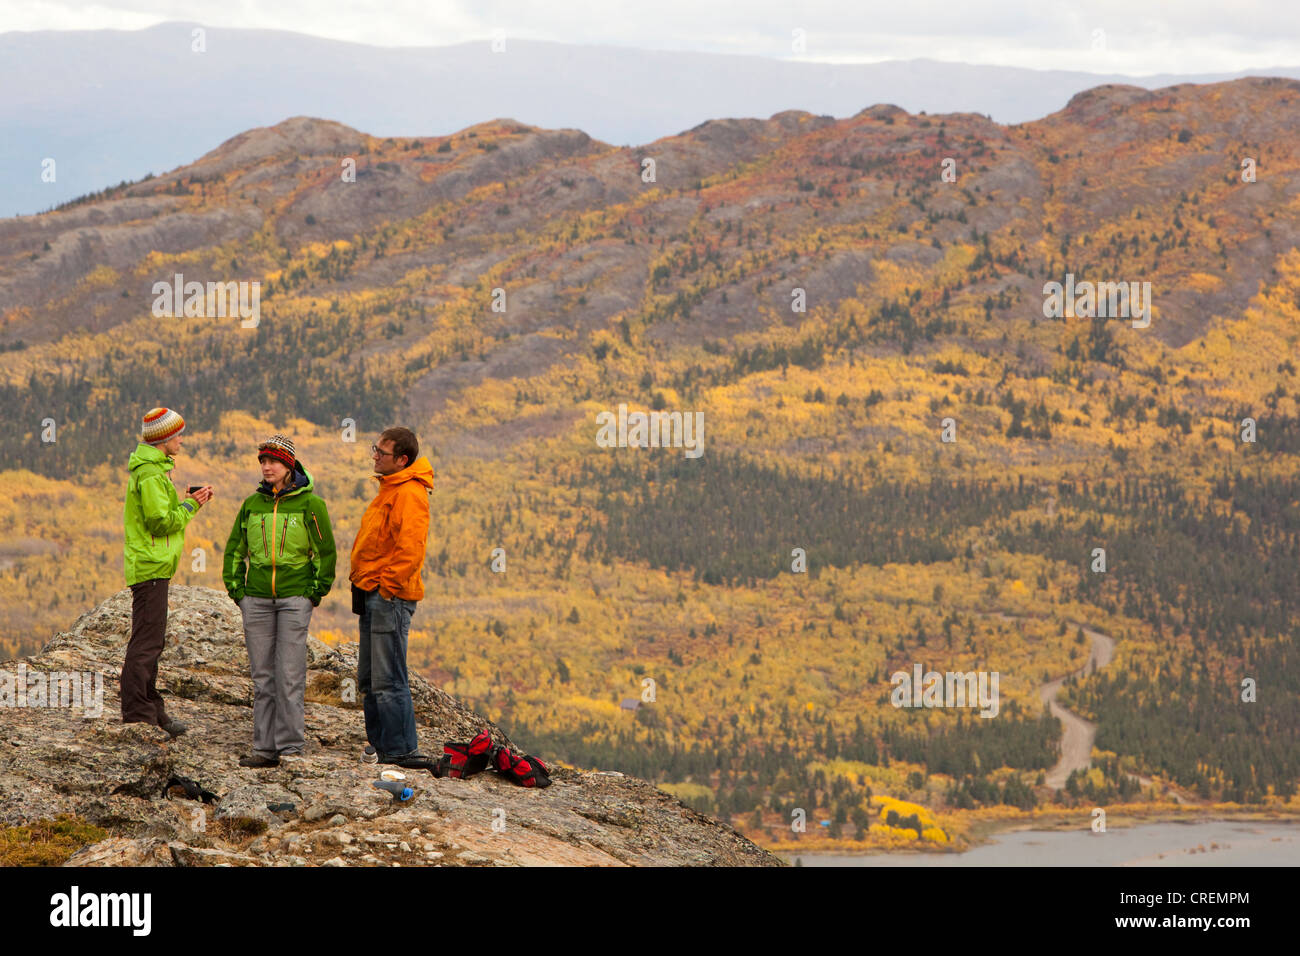 Groupe de randonneurs, sous la toundra alpine, l'été indien, les feuilles en couleurs d'automne, automne, près de Fish Lake, Yukon Territory, Canada Banque D'Images